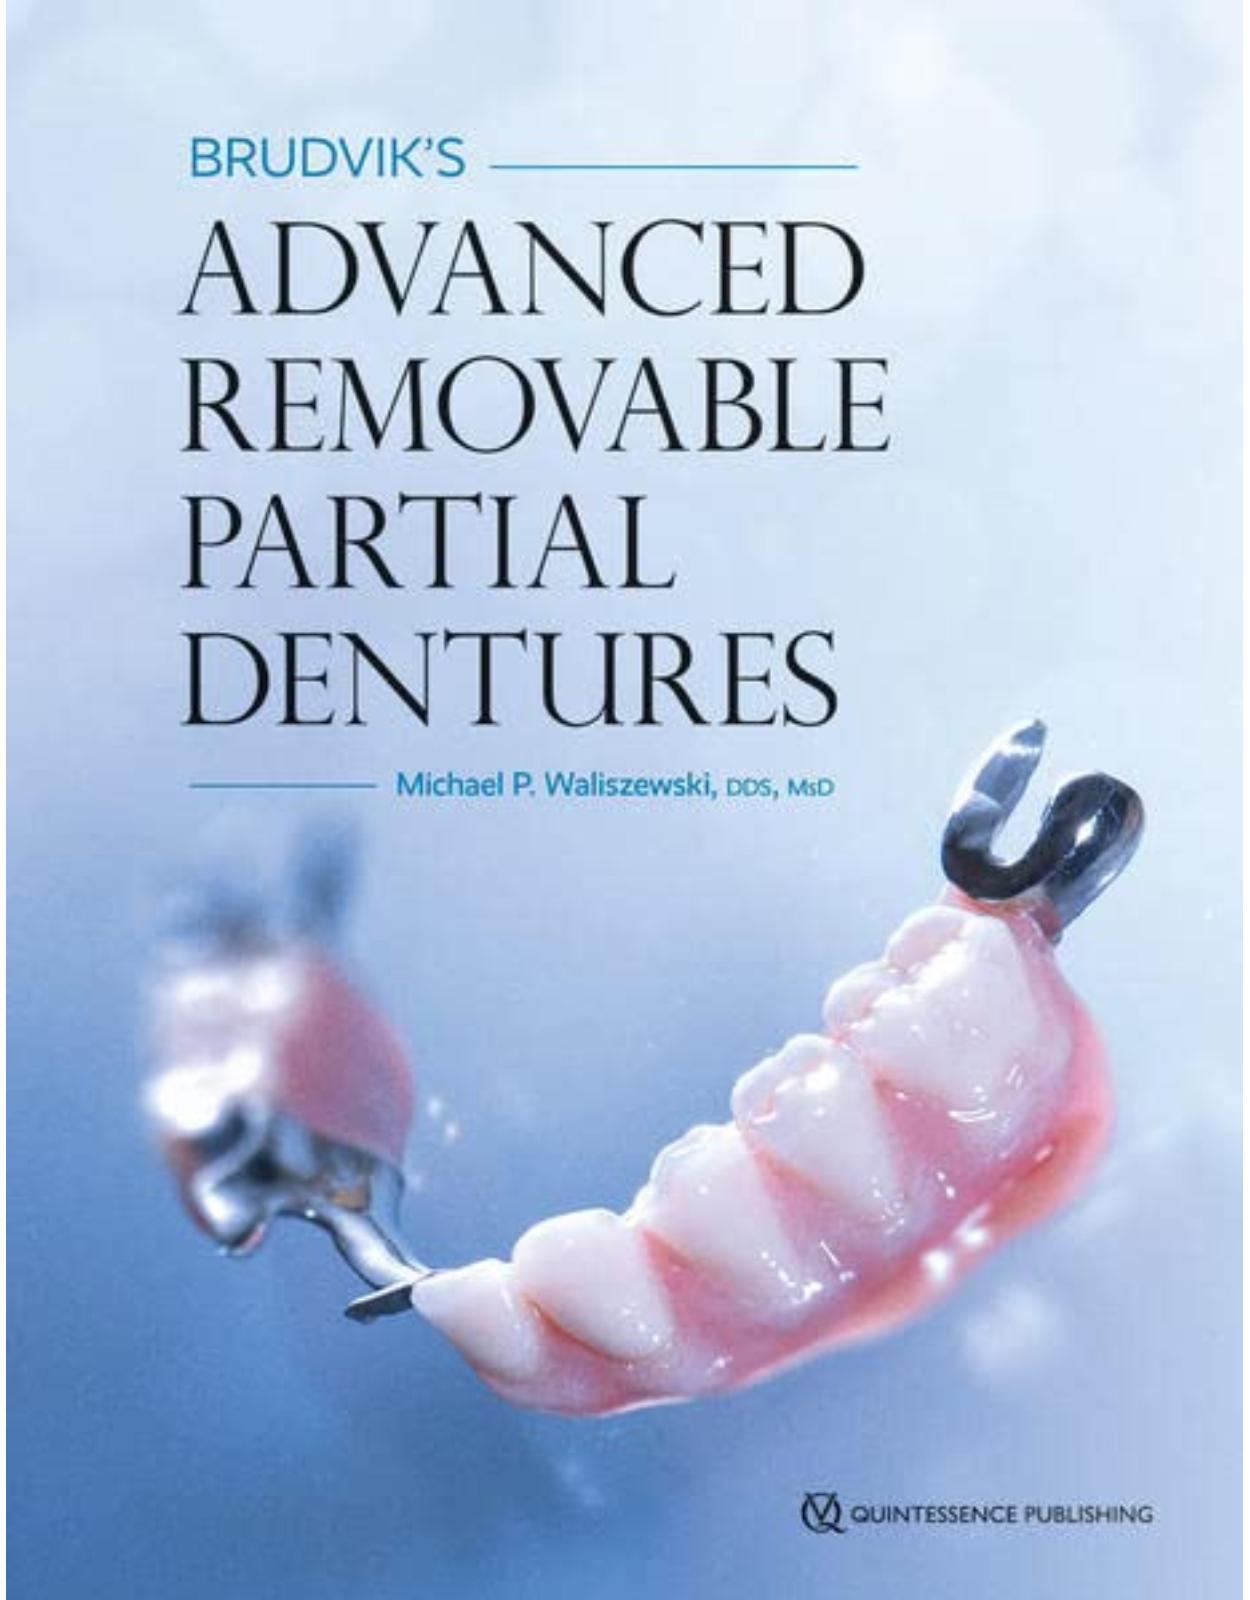 Brudvik’s Advanced Removable Partial Dentures